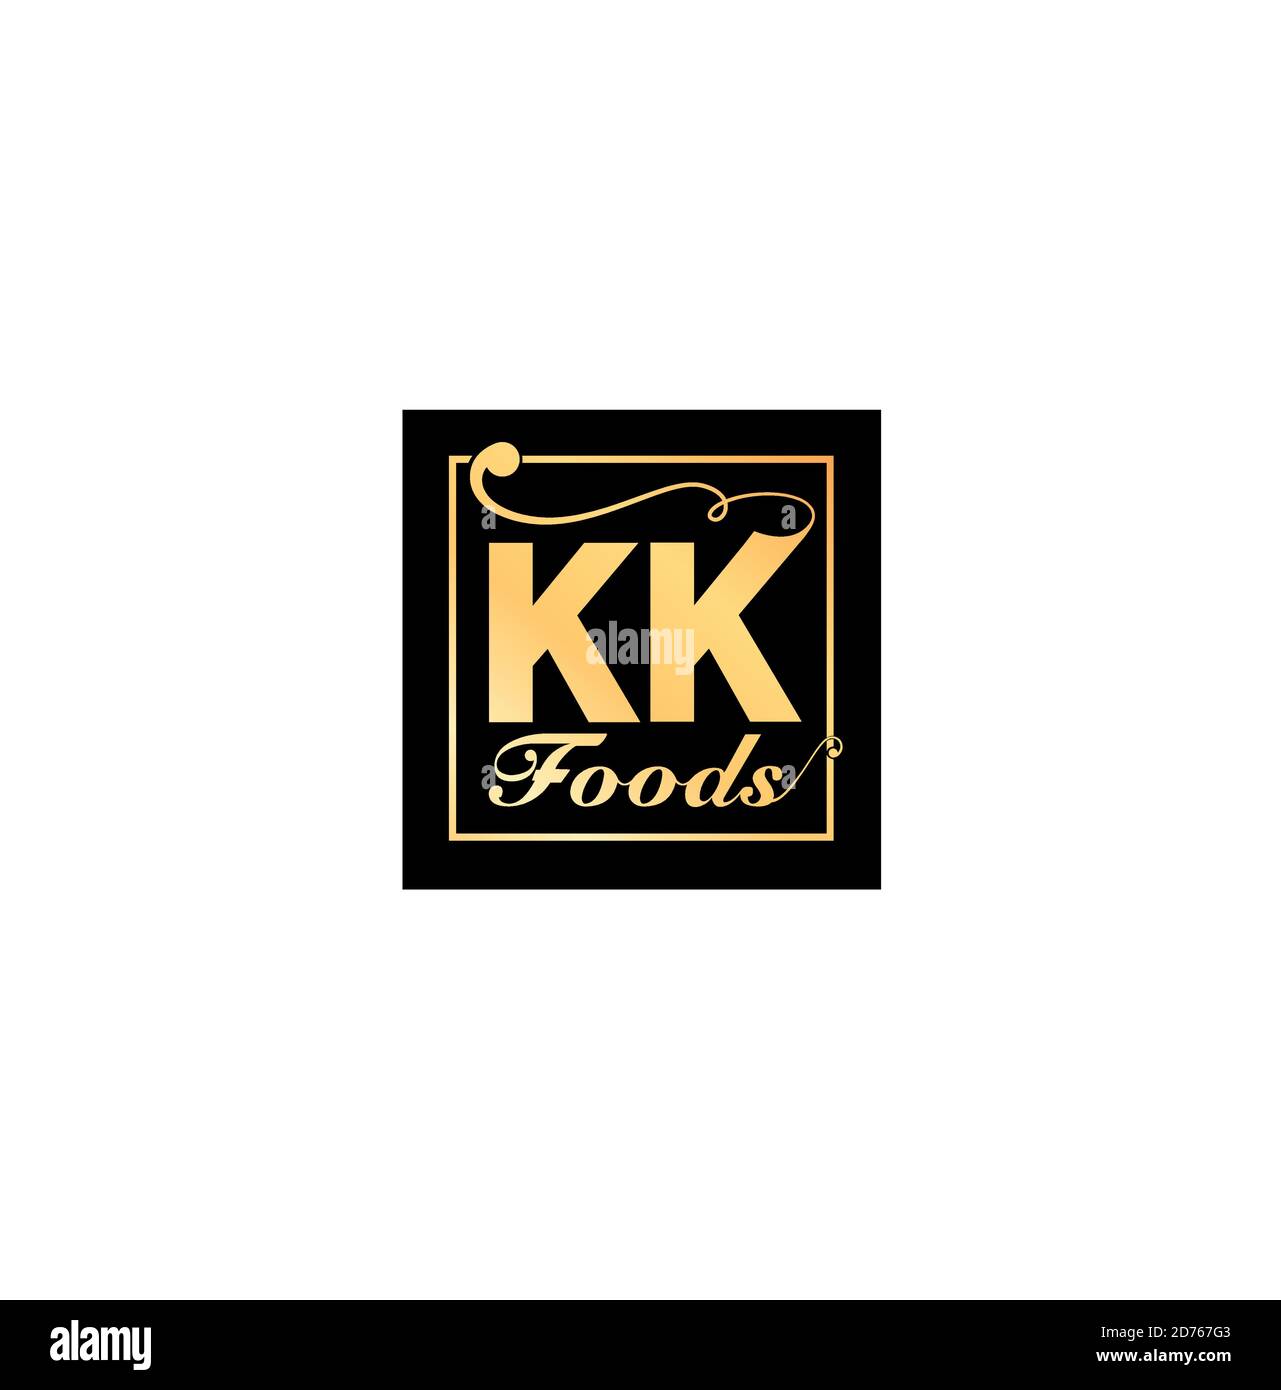 Logo KK Foods de couleur dorée sur fond noir. Illustration de Vecteur